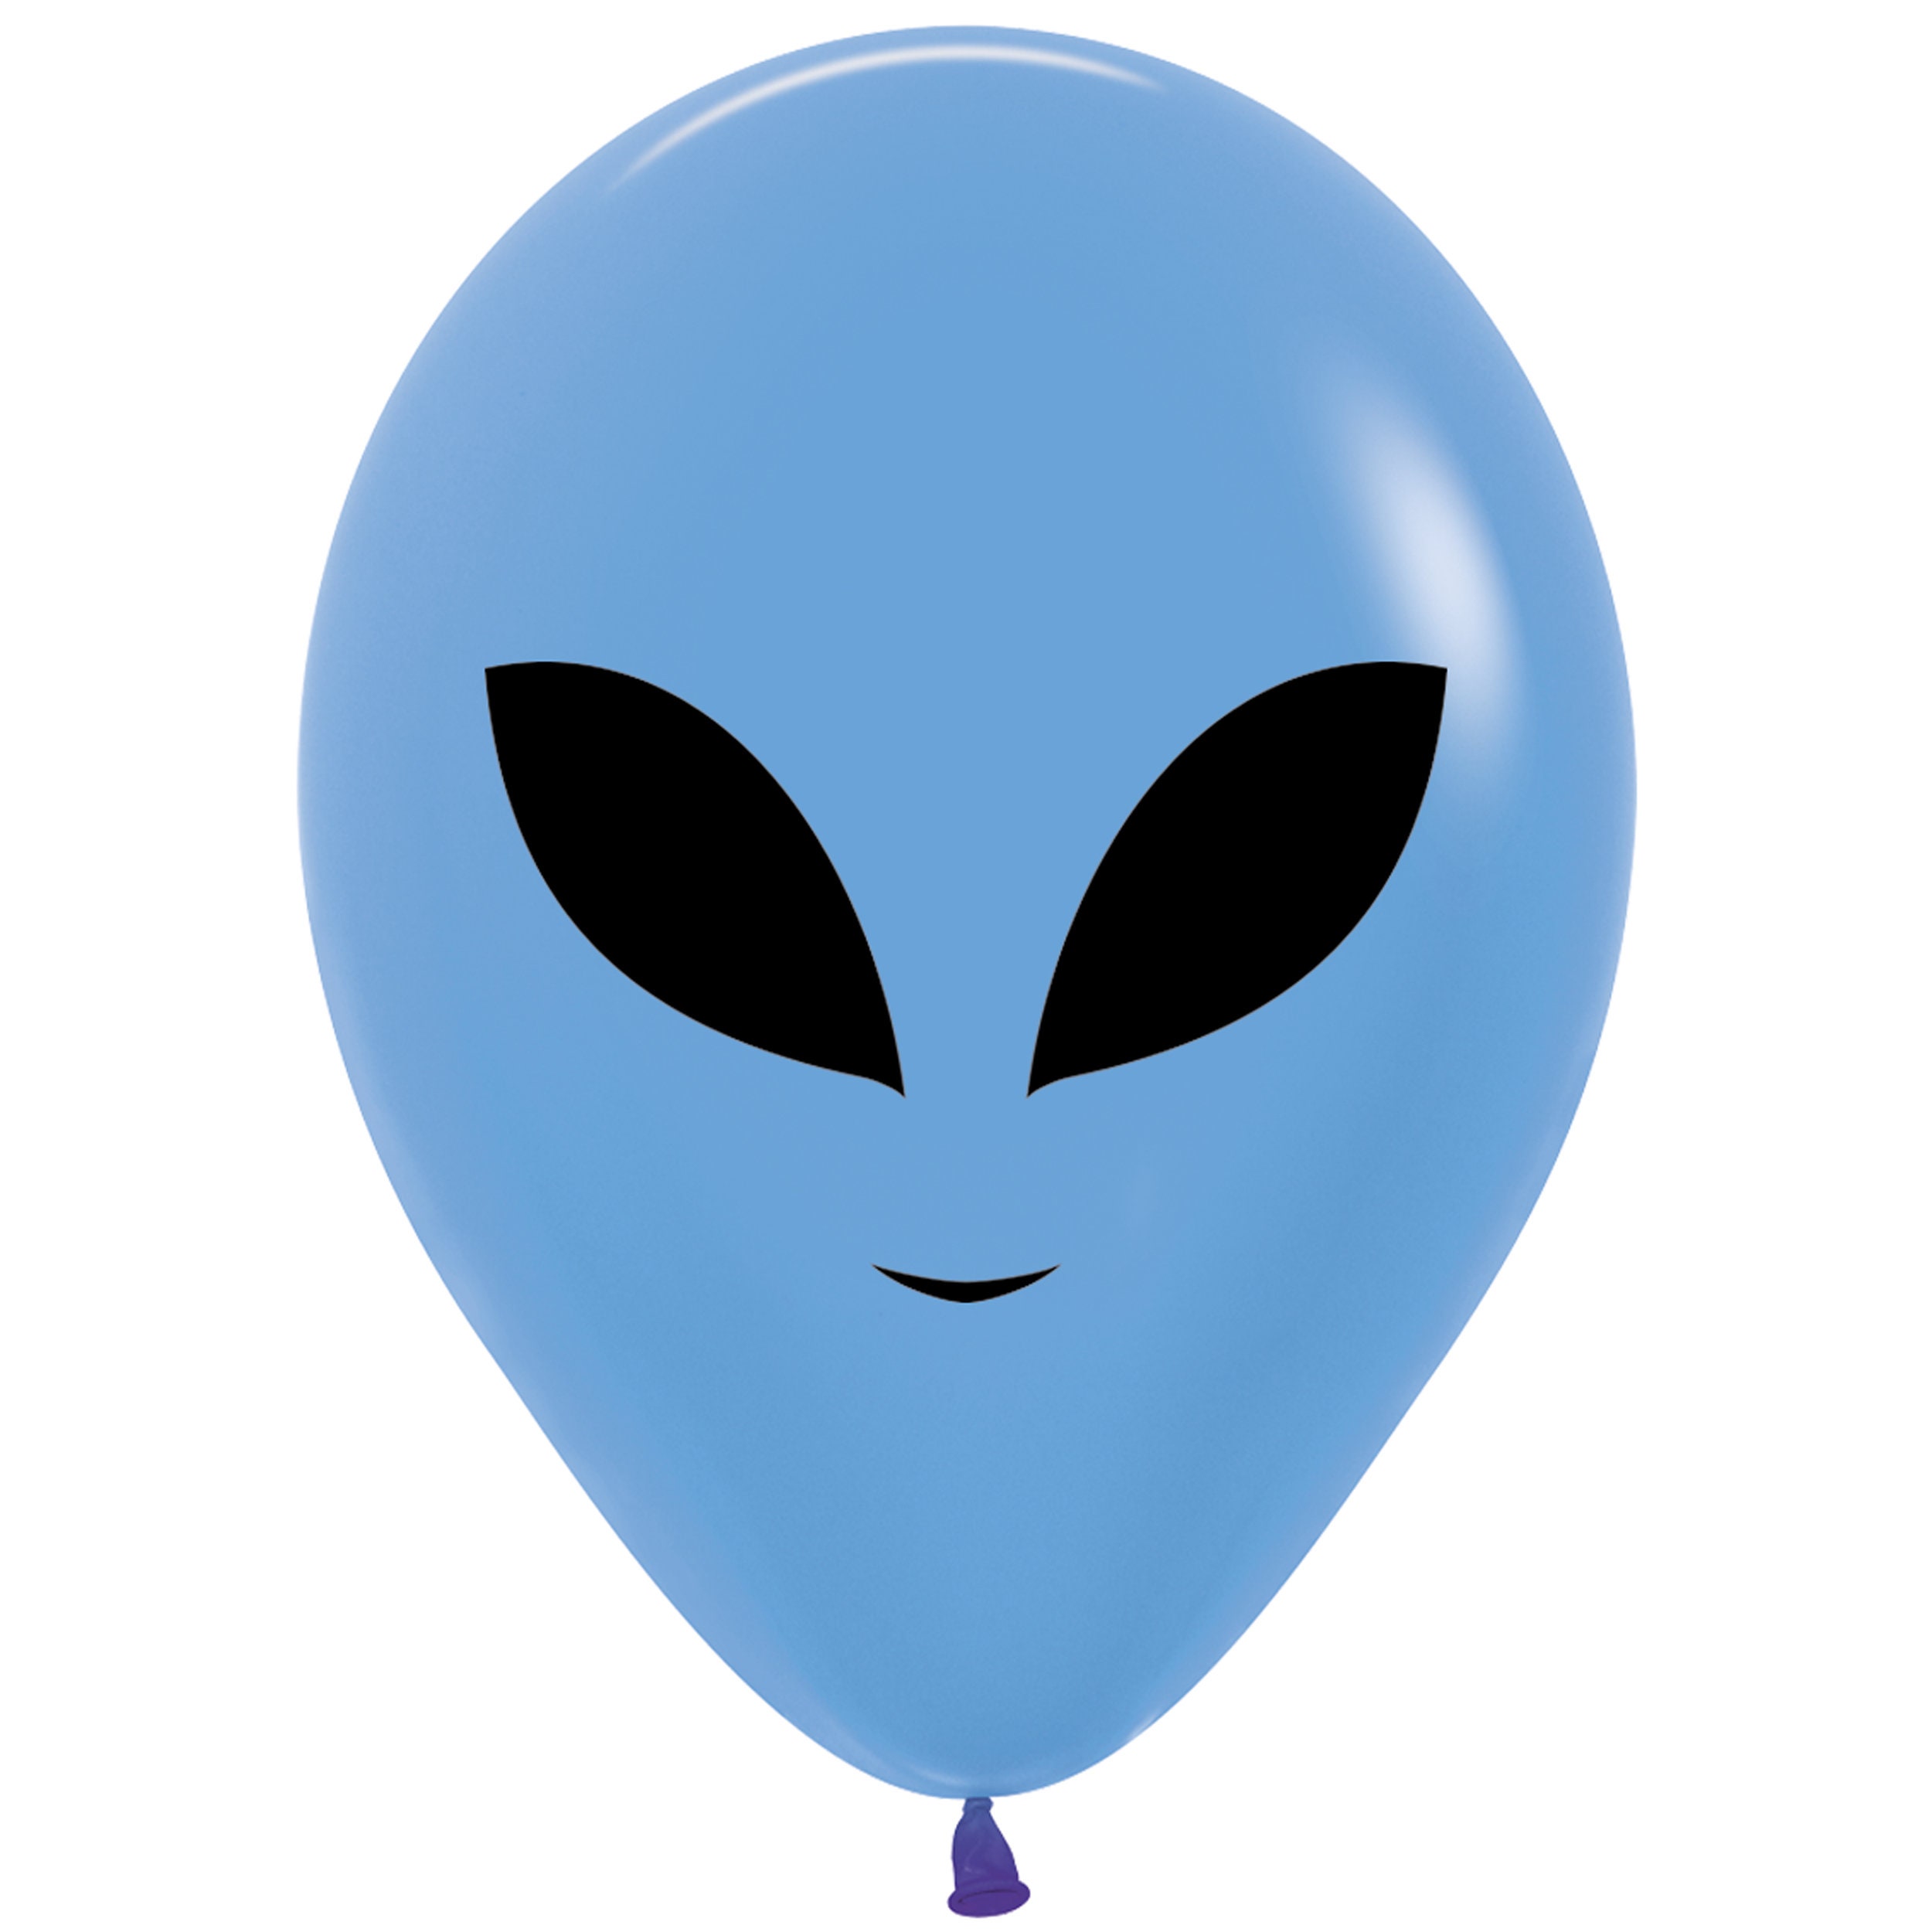 Diez globos alienígenas 5, globo del espacio exterior, fiesta espacial,  globo de astronauta, globo cohete, cumpleaños espacial, decoración  alienígena, fiesta de galaxias -  México